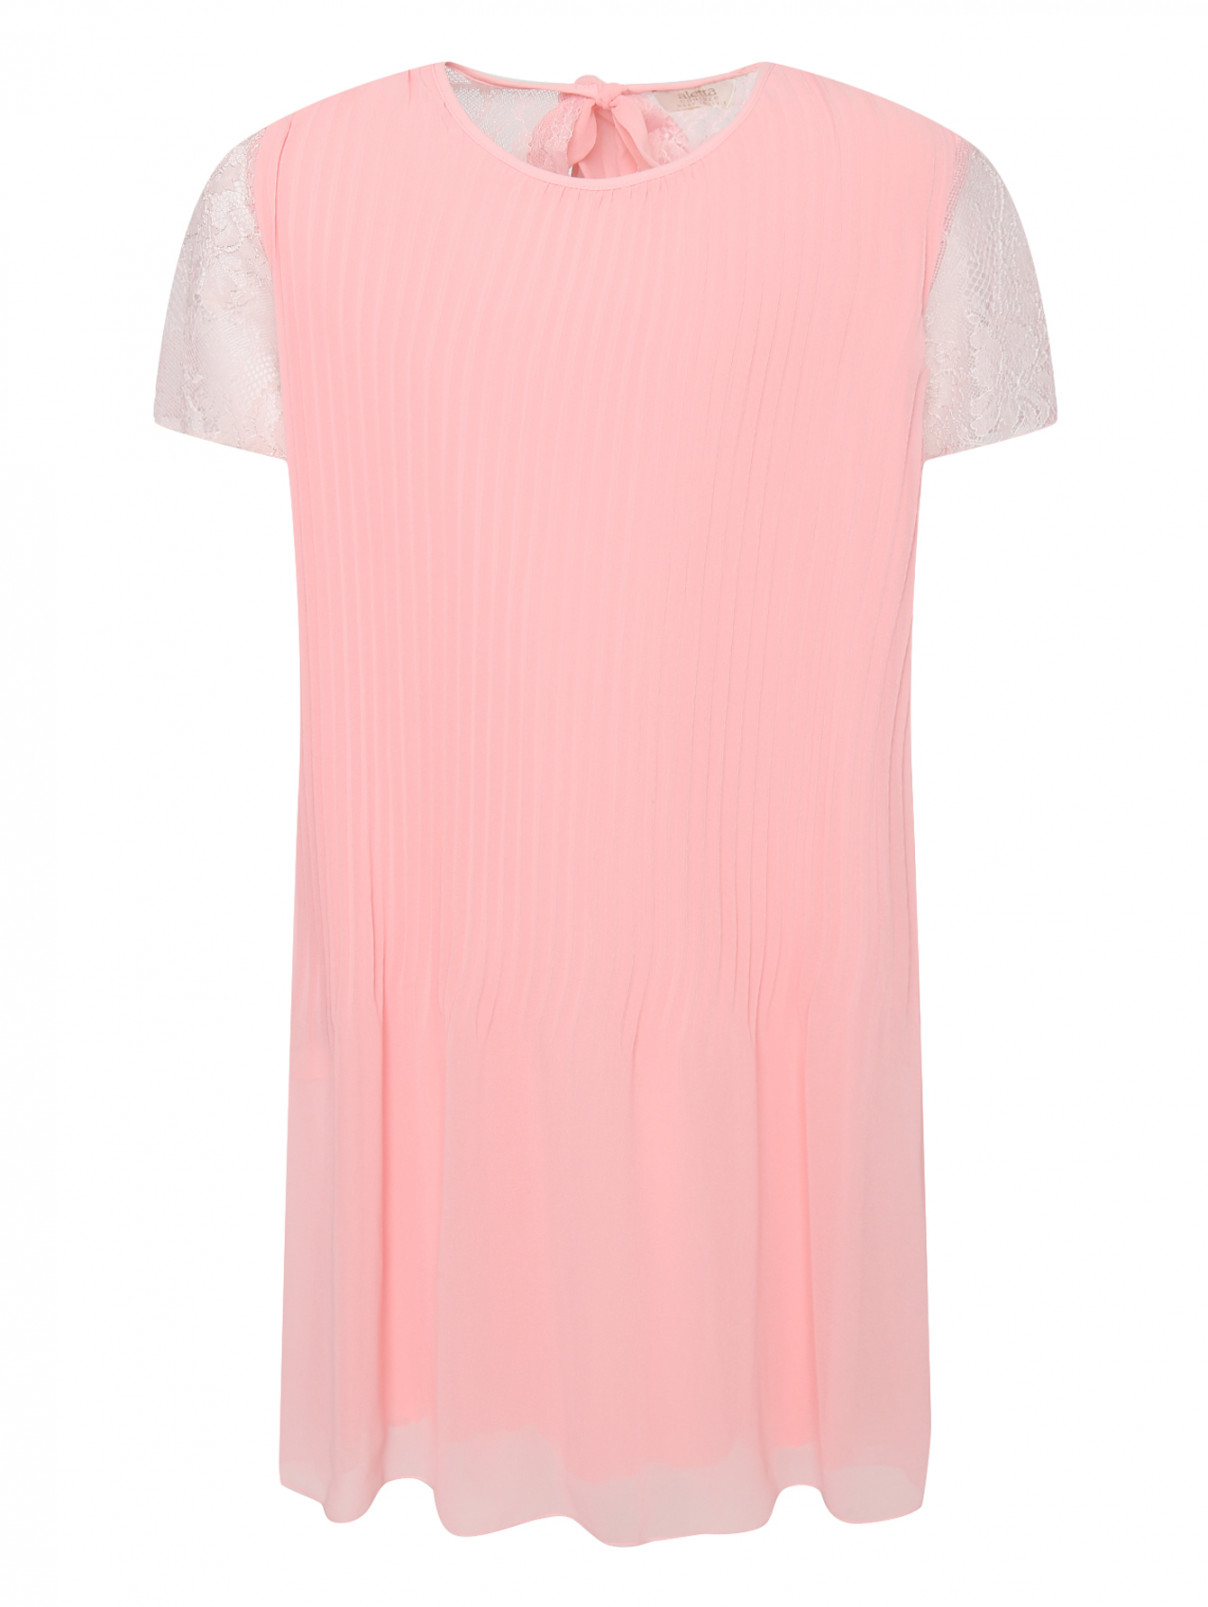 Платье плиссированное с кружевом Aletta Couture  –  Общий вид  – Цвет:  Розовый